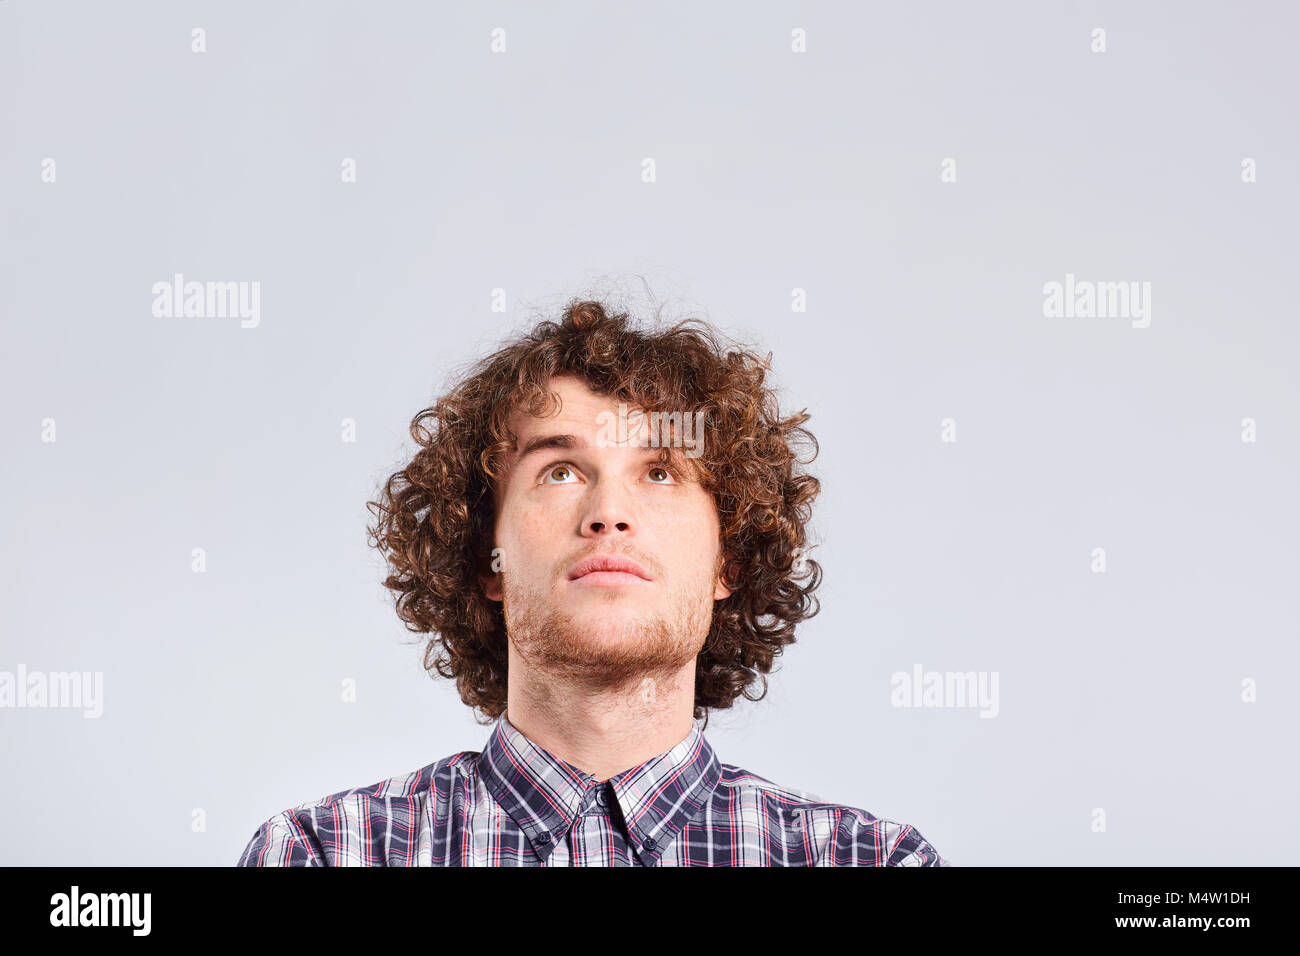 Ein curly-haired Kerl denkt mit einer ernsten Emotion. Stockfoto